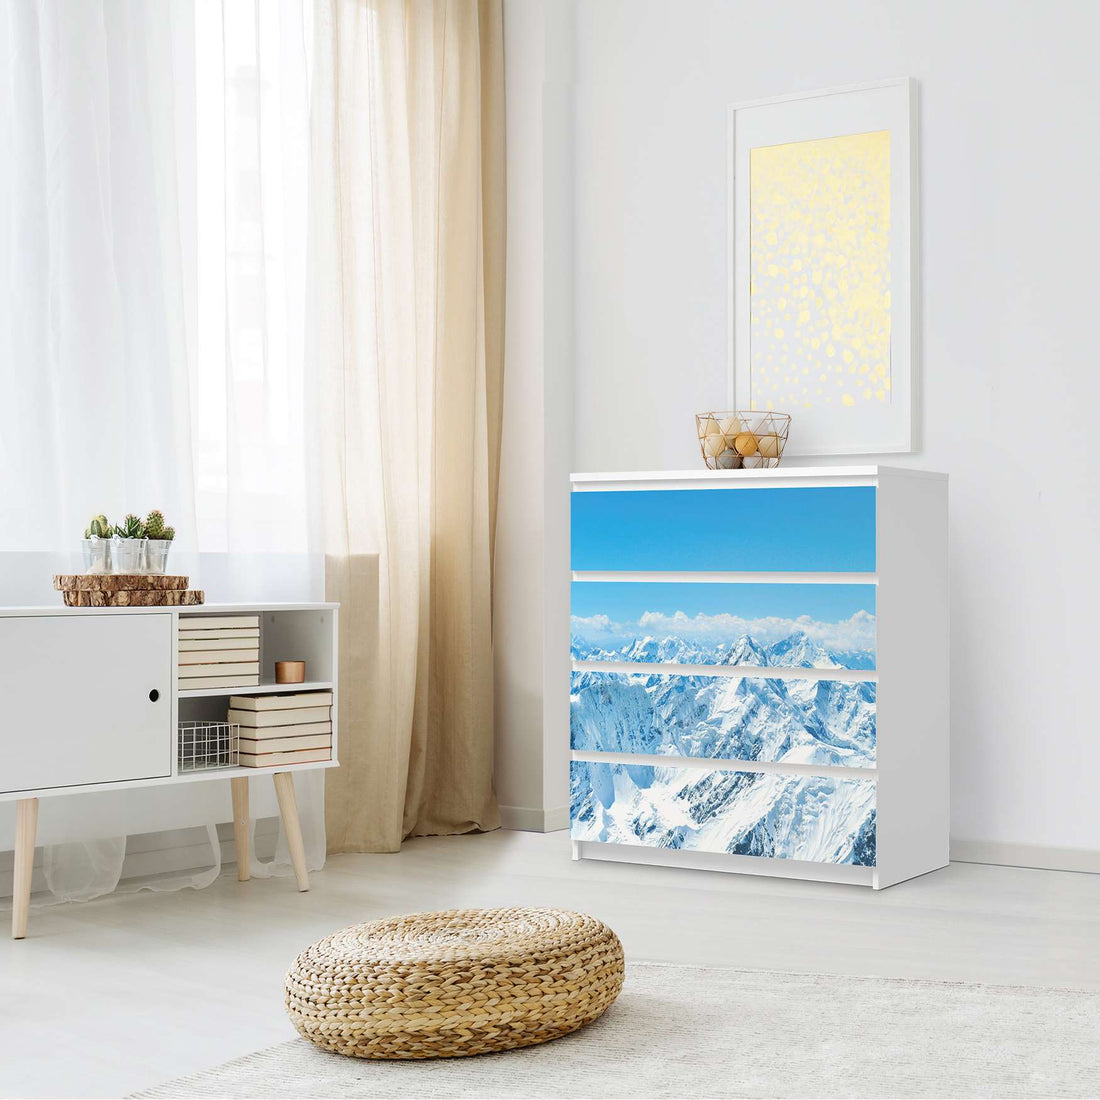 Folie für Möbel Himalaya - IKEA Malm Kommode 4 Schubladen - Schlafzimmer